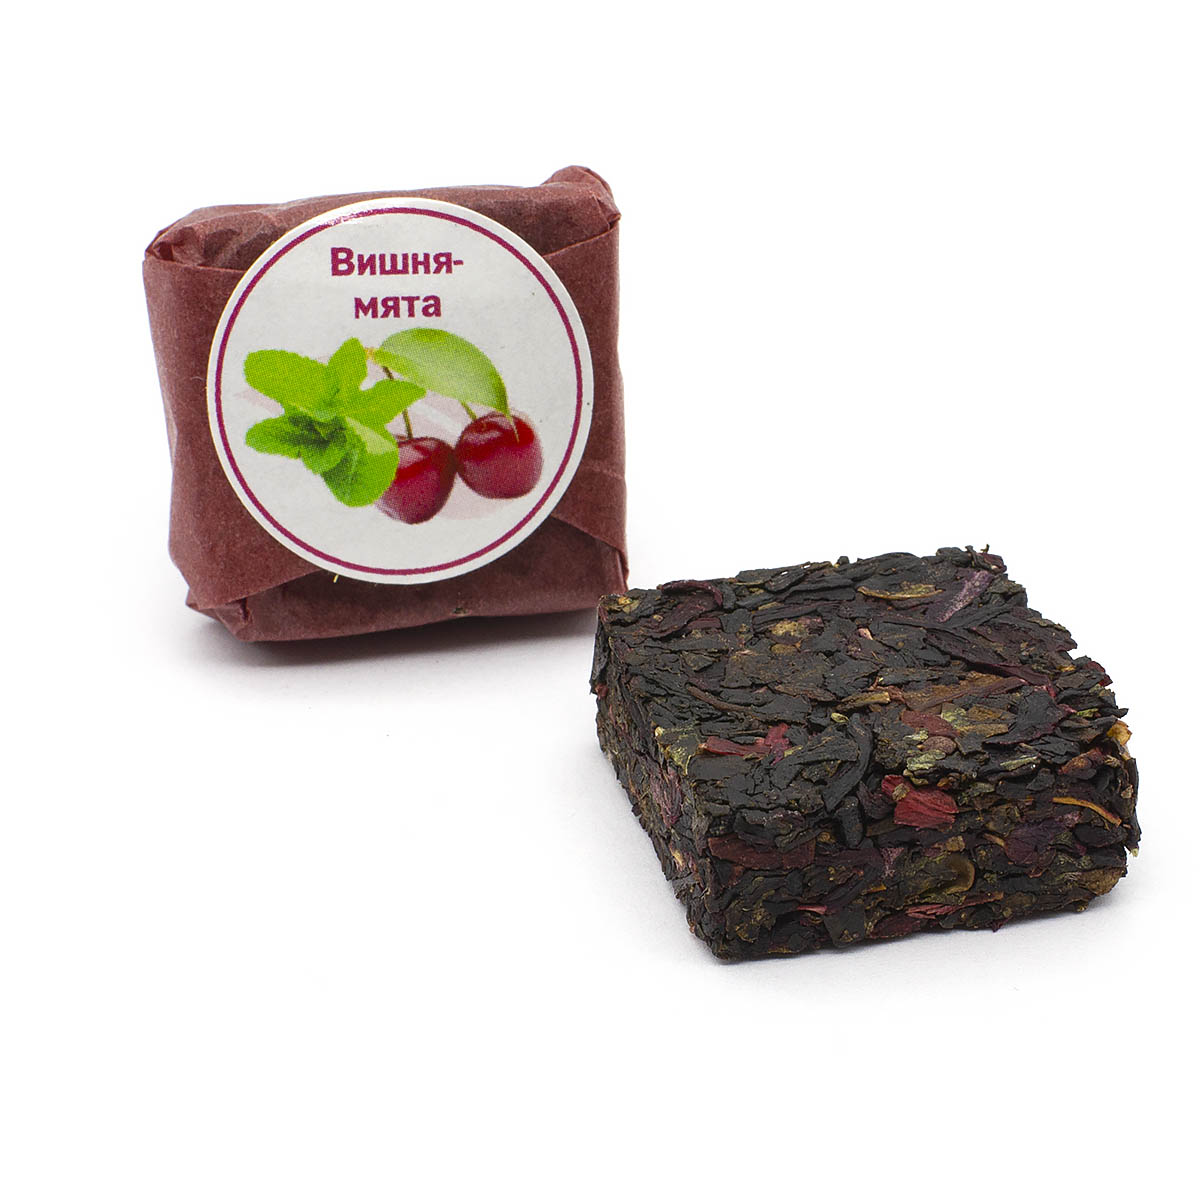 Чай фруктово-ягодный Вишня-мята, кубик 5-7 г